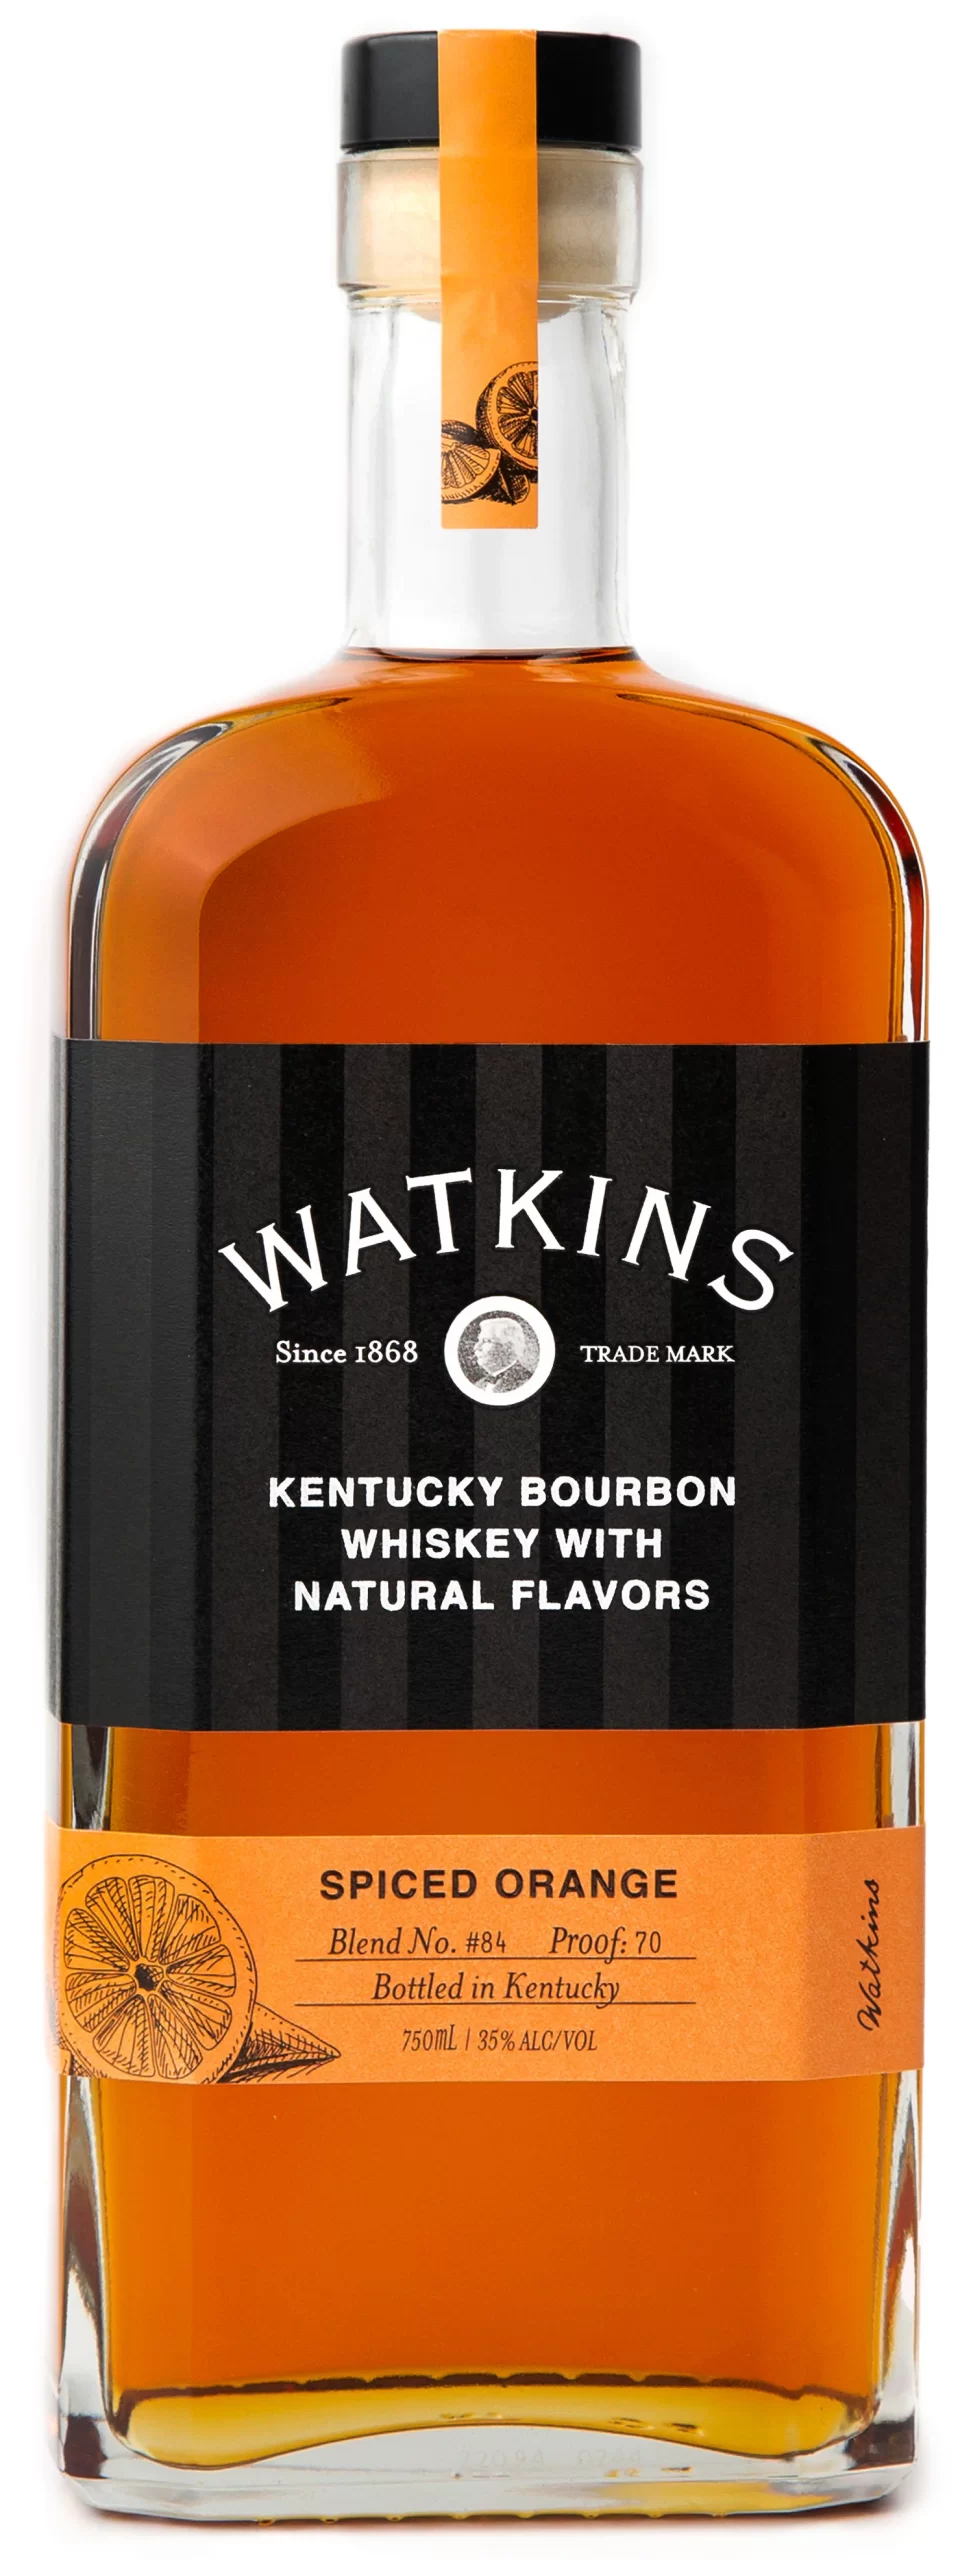 watkins spiced orange bourbon